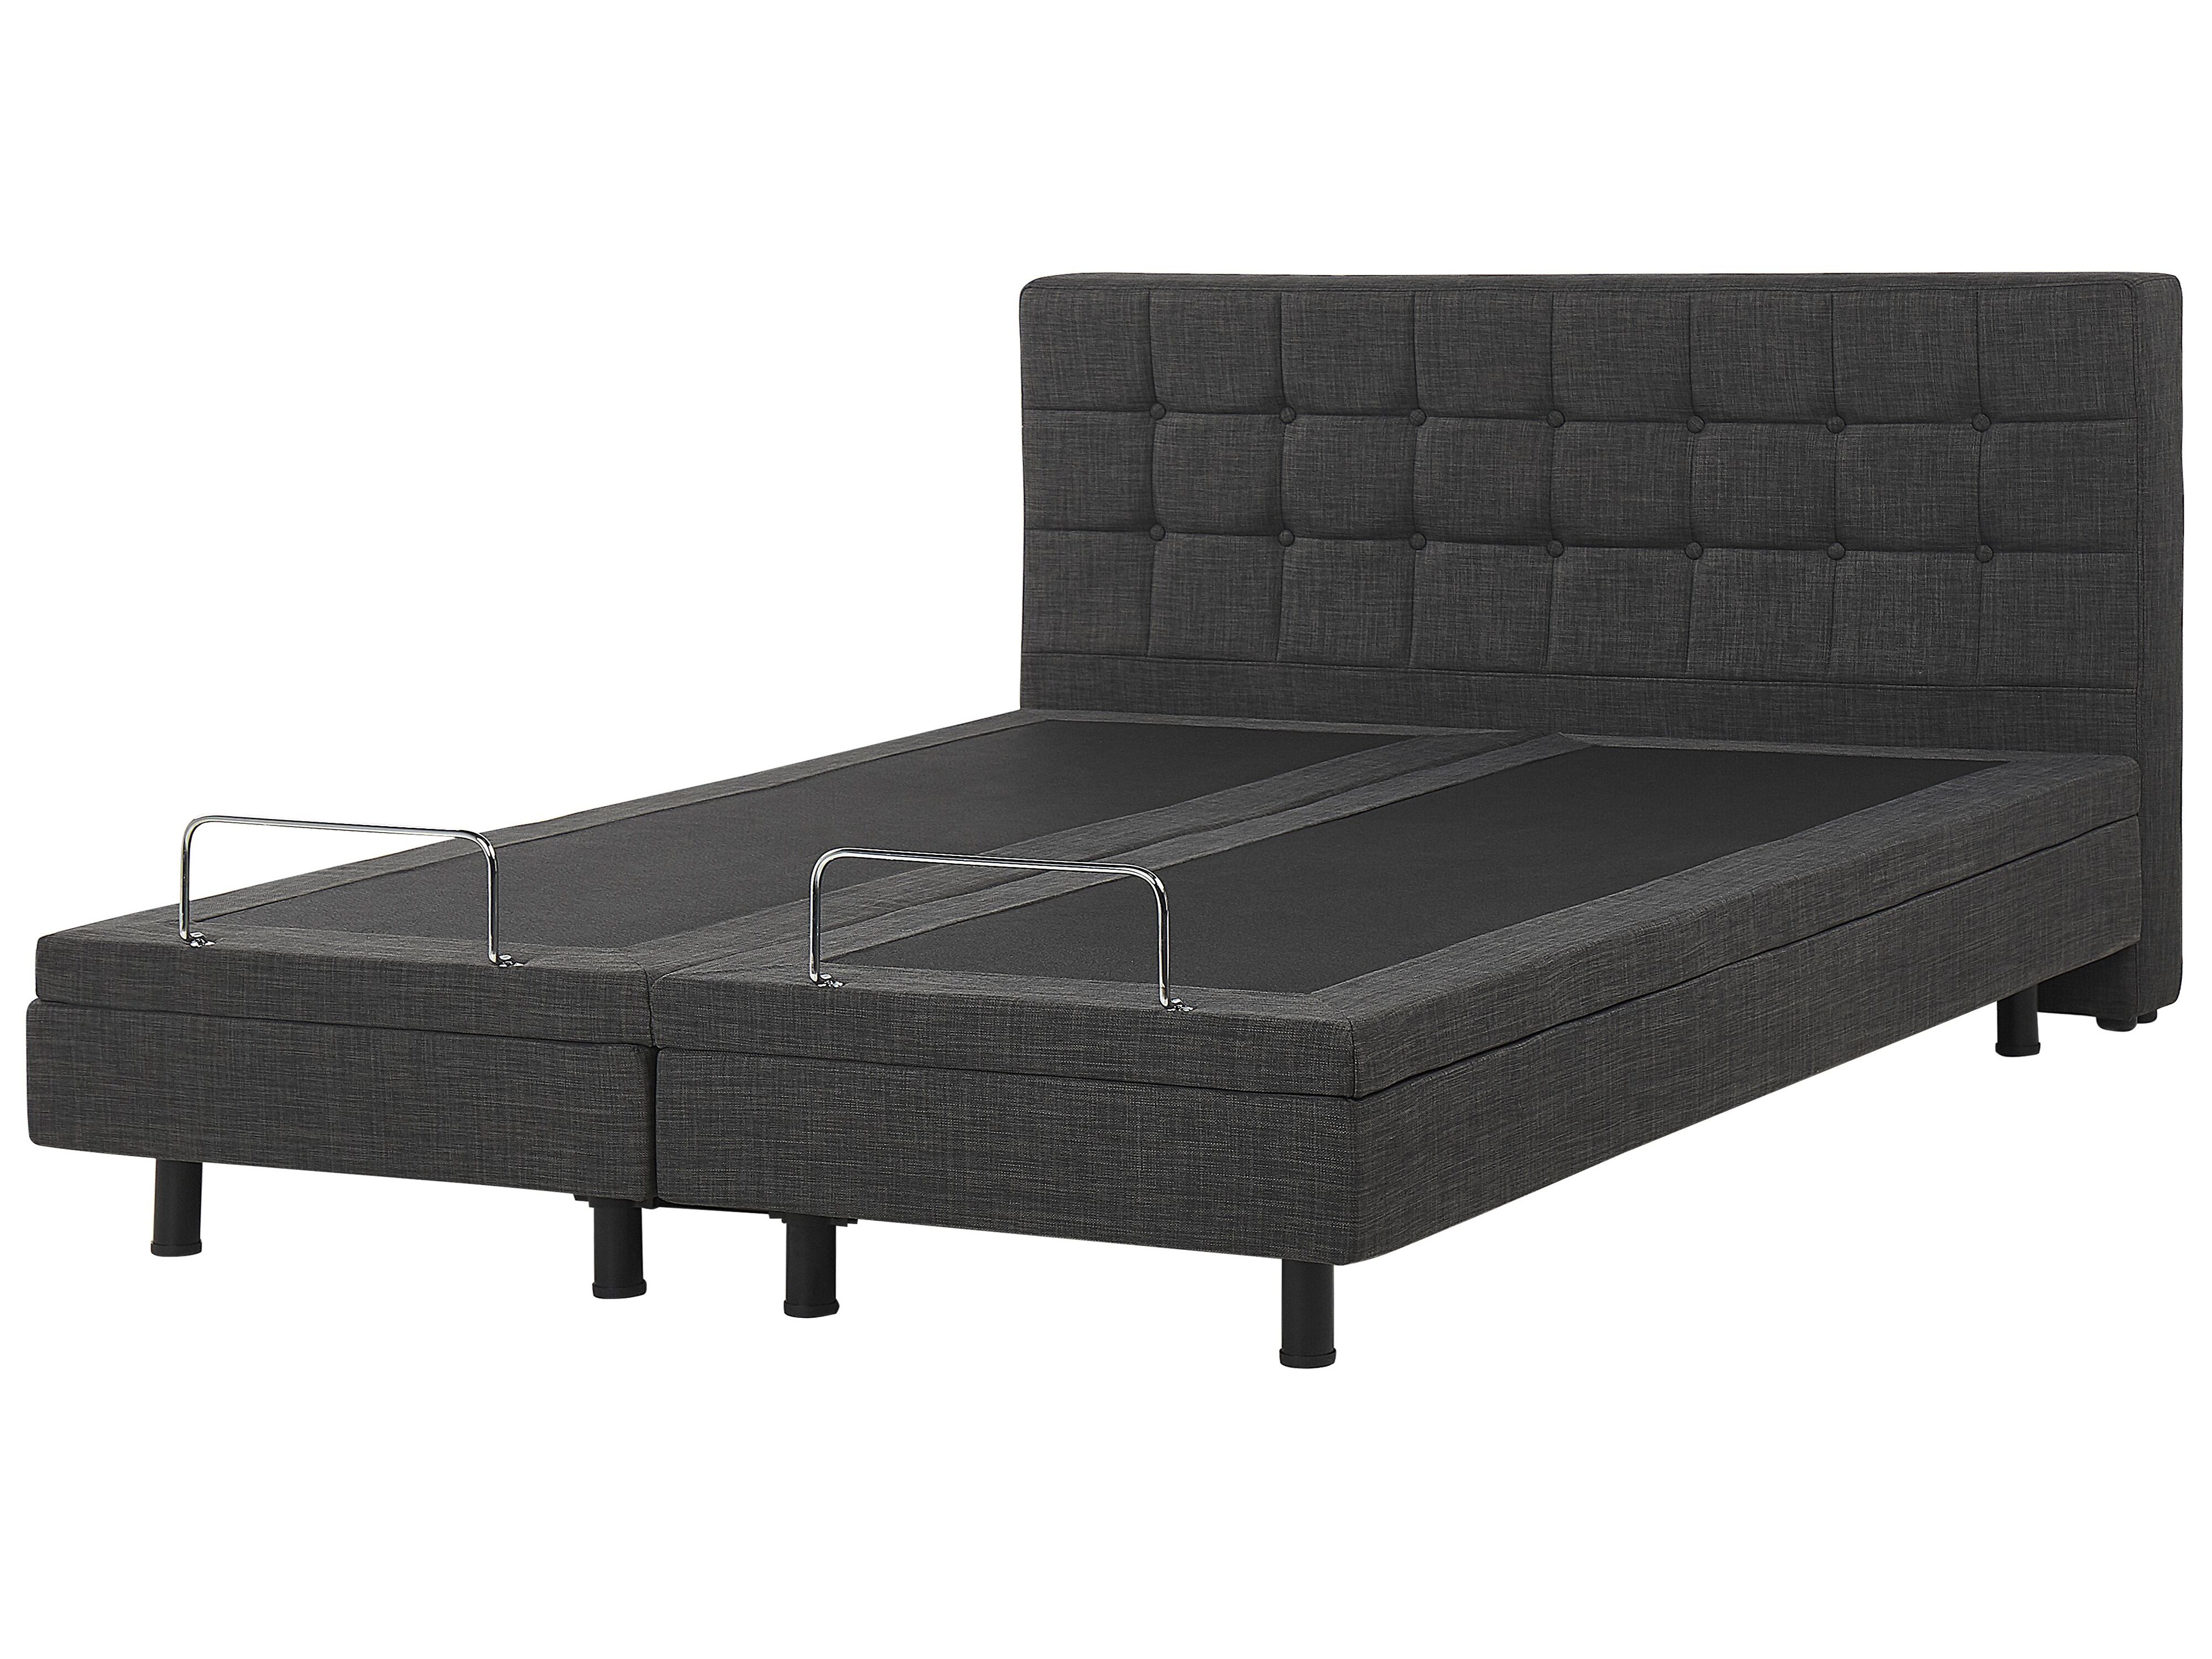 Adjustable Bed Grey Duke, Bed Frame For King Size Adjustable